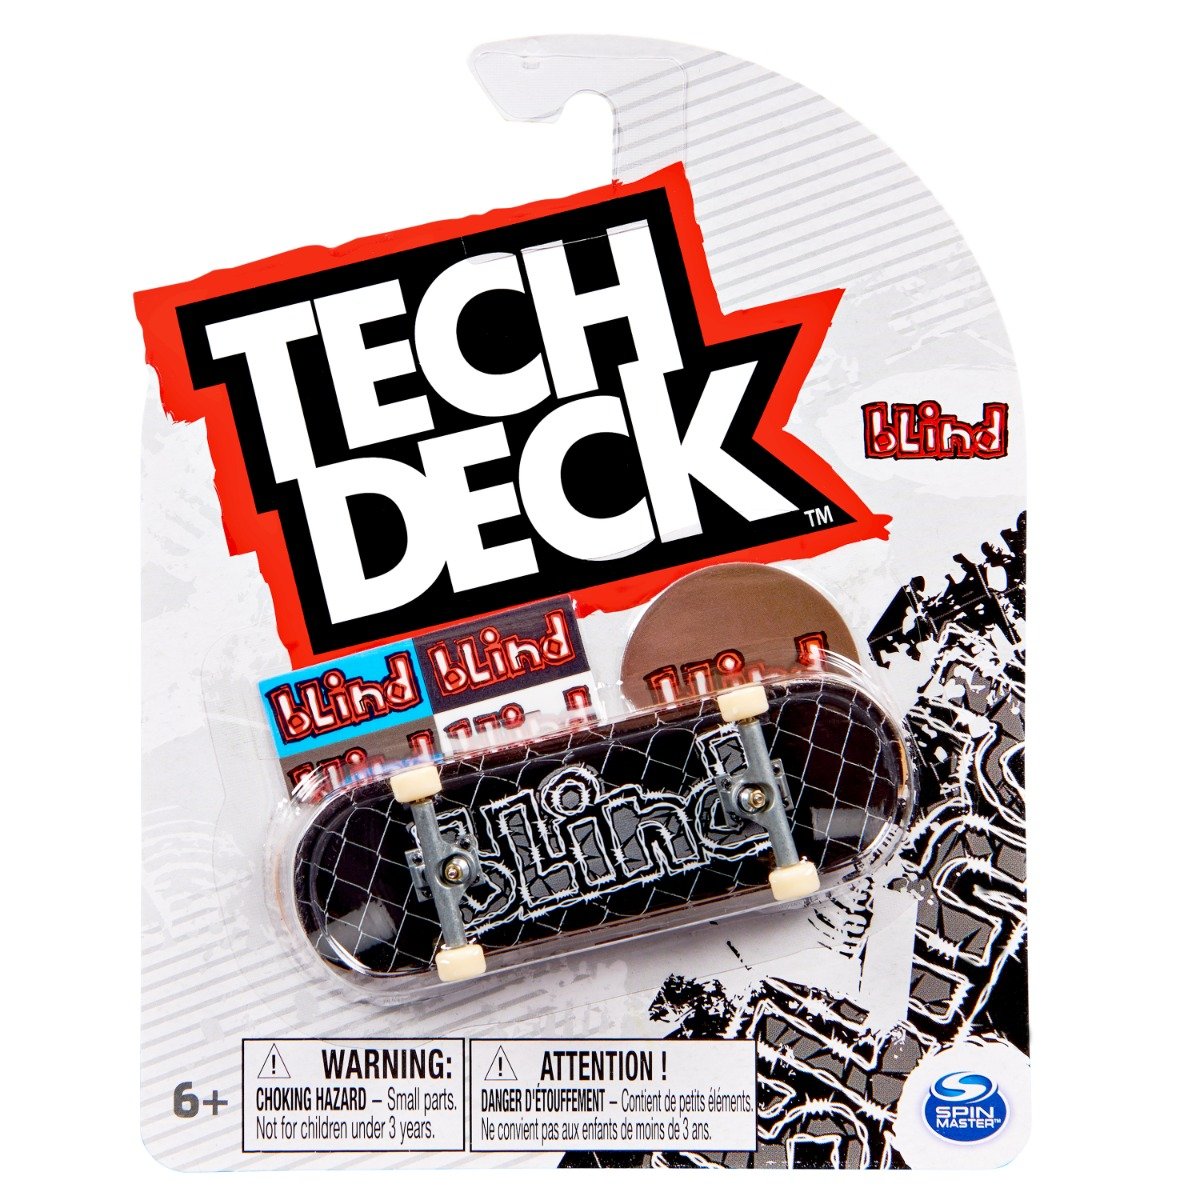 Mini placa skateboard Tech Deck, Blind Zach Saraceno, 20141219 20141219 imagine 2022